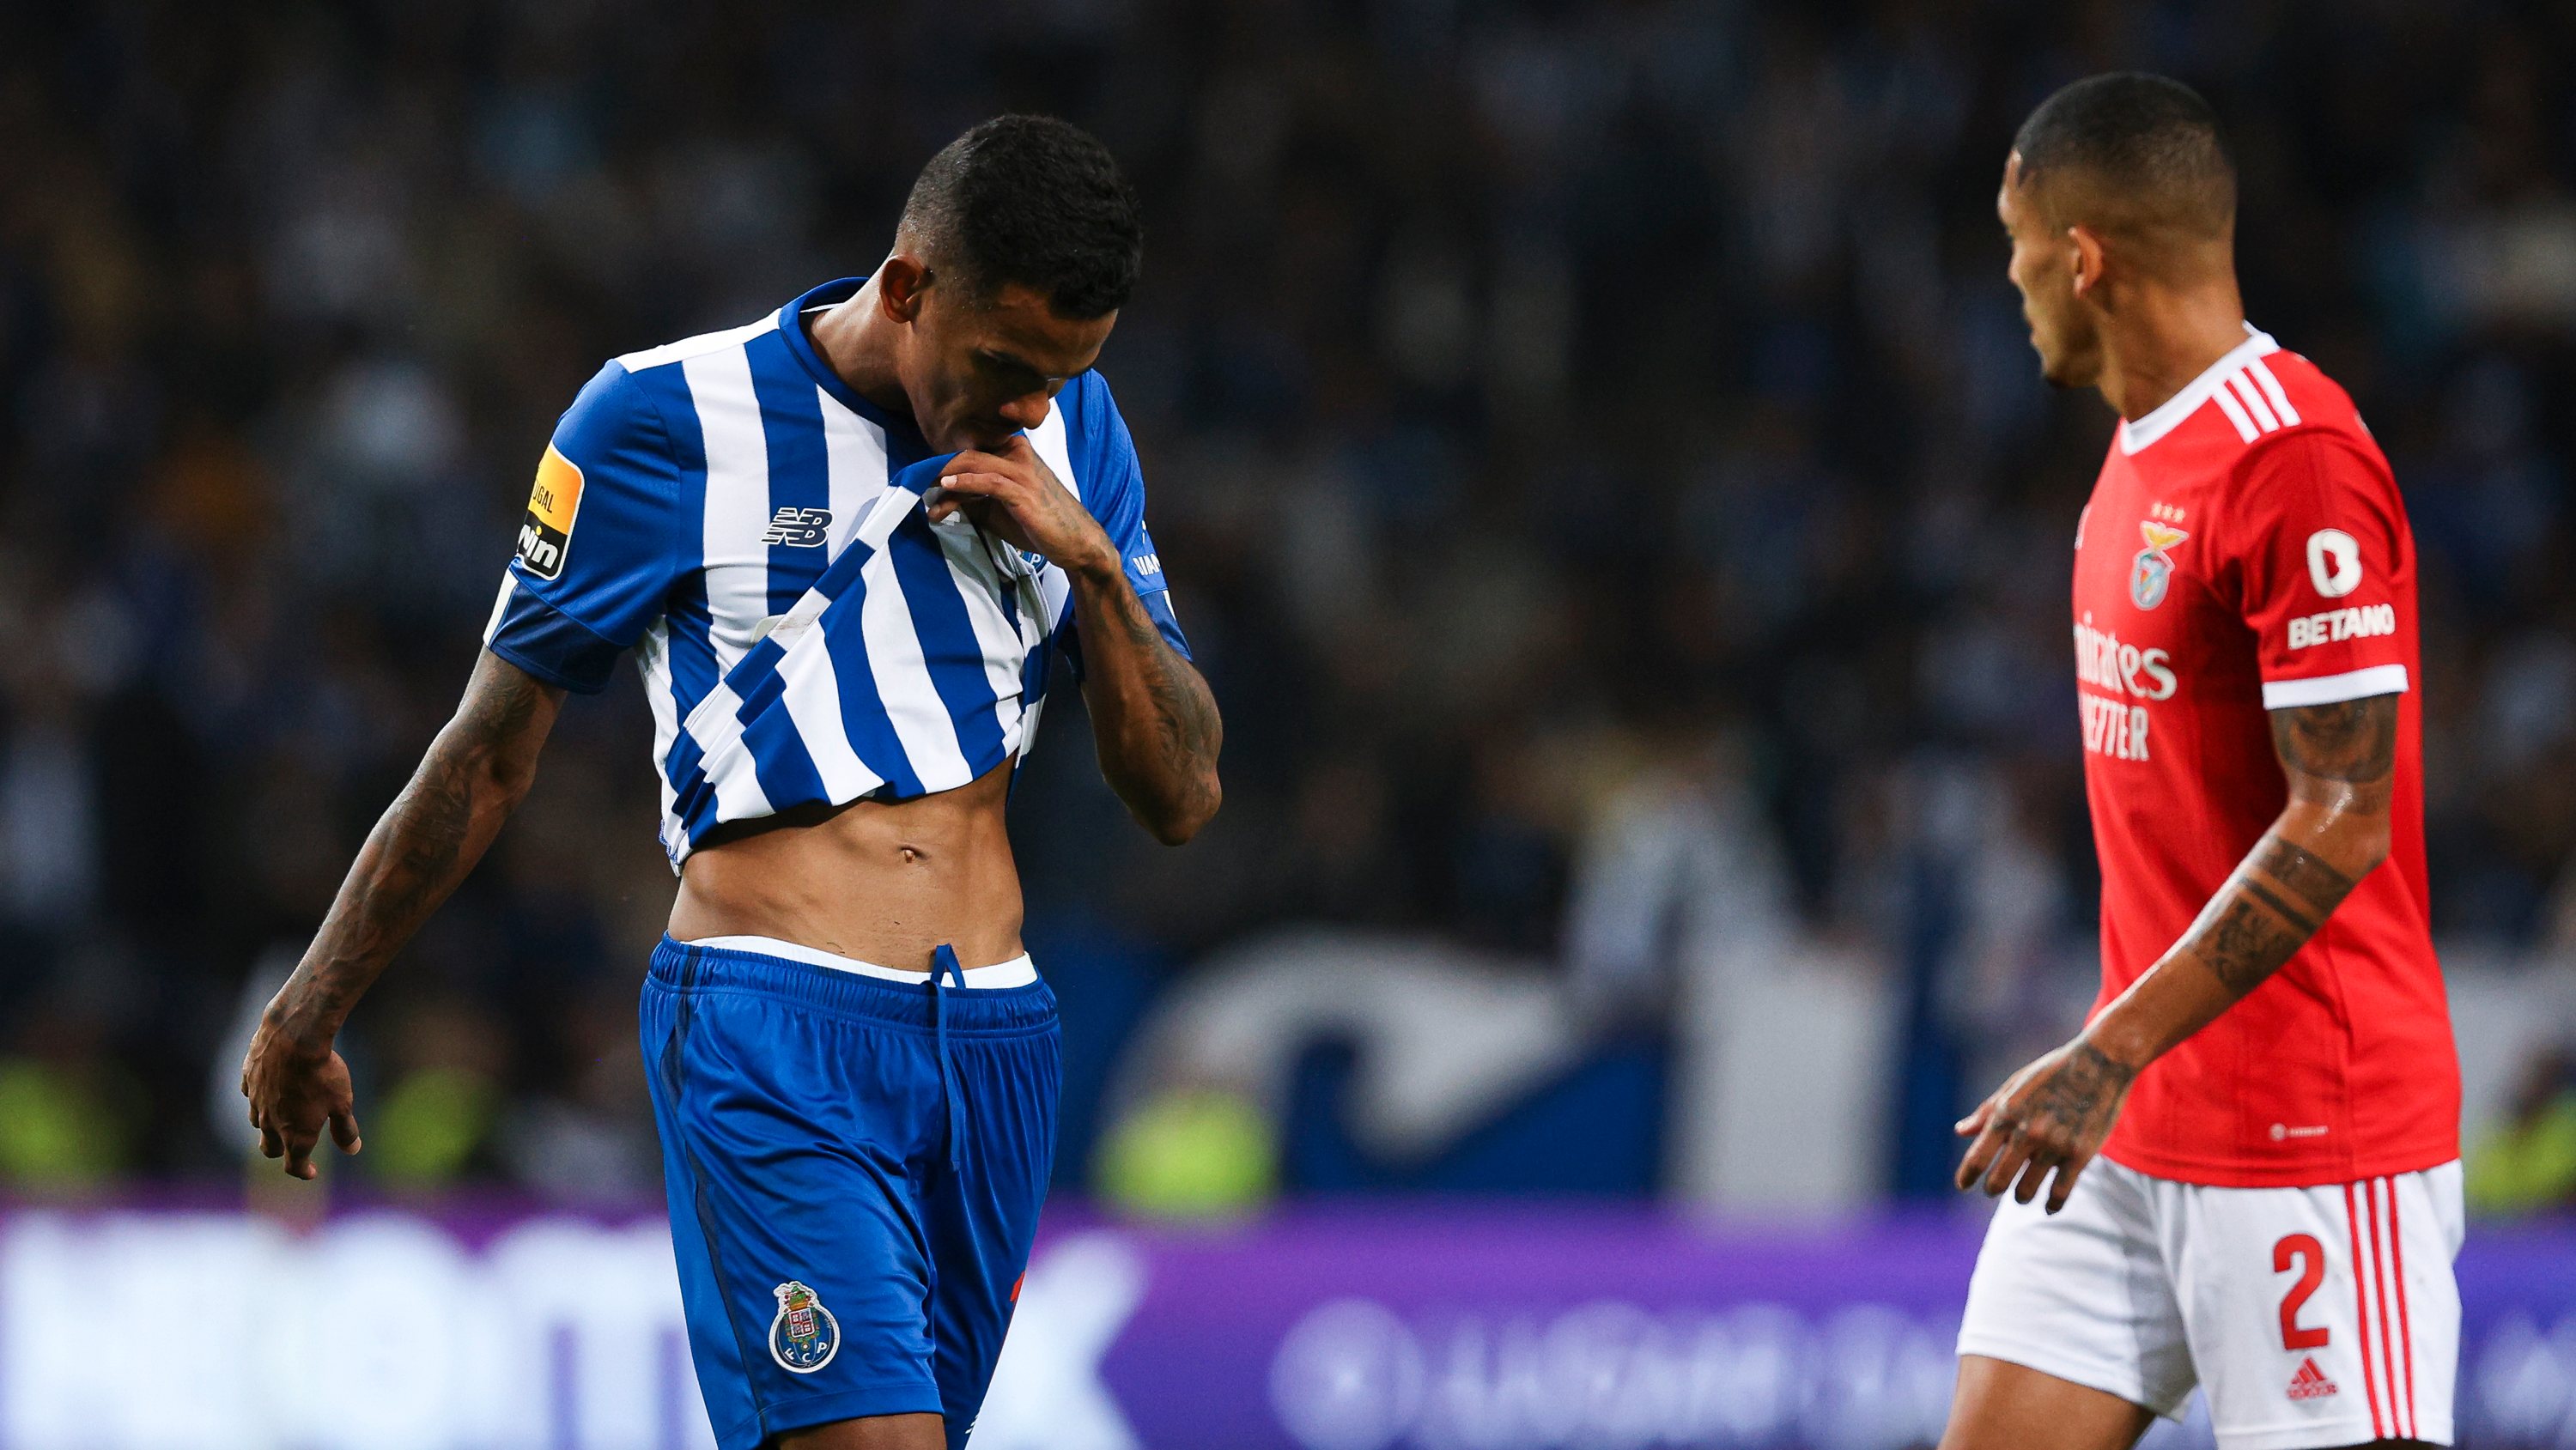 Ver: Eustáquio: Temos de ser FC Porto, também temos história na